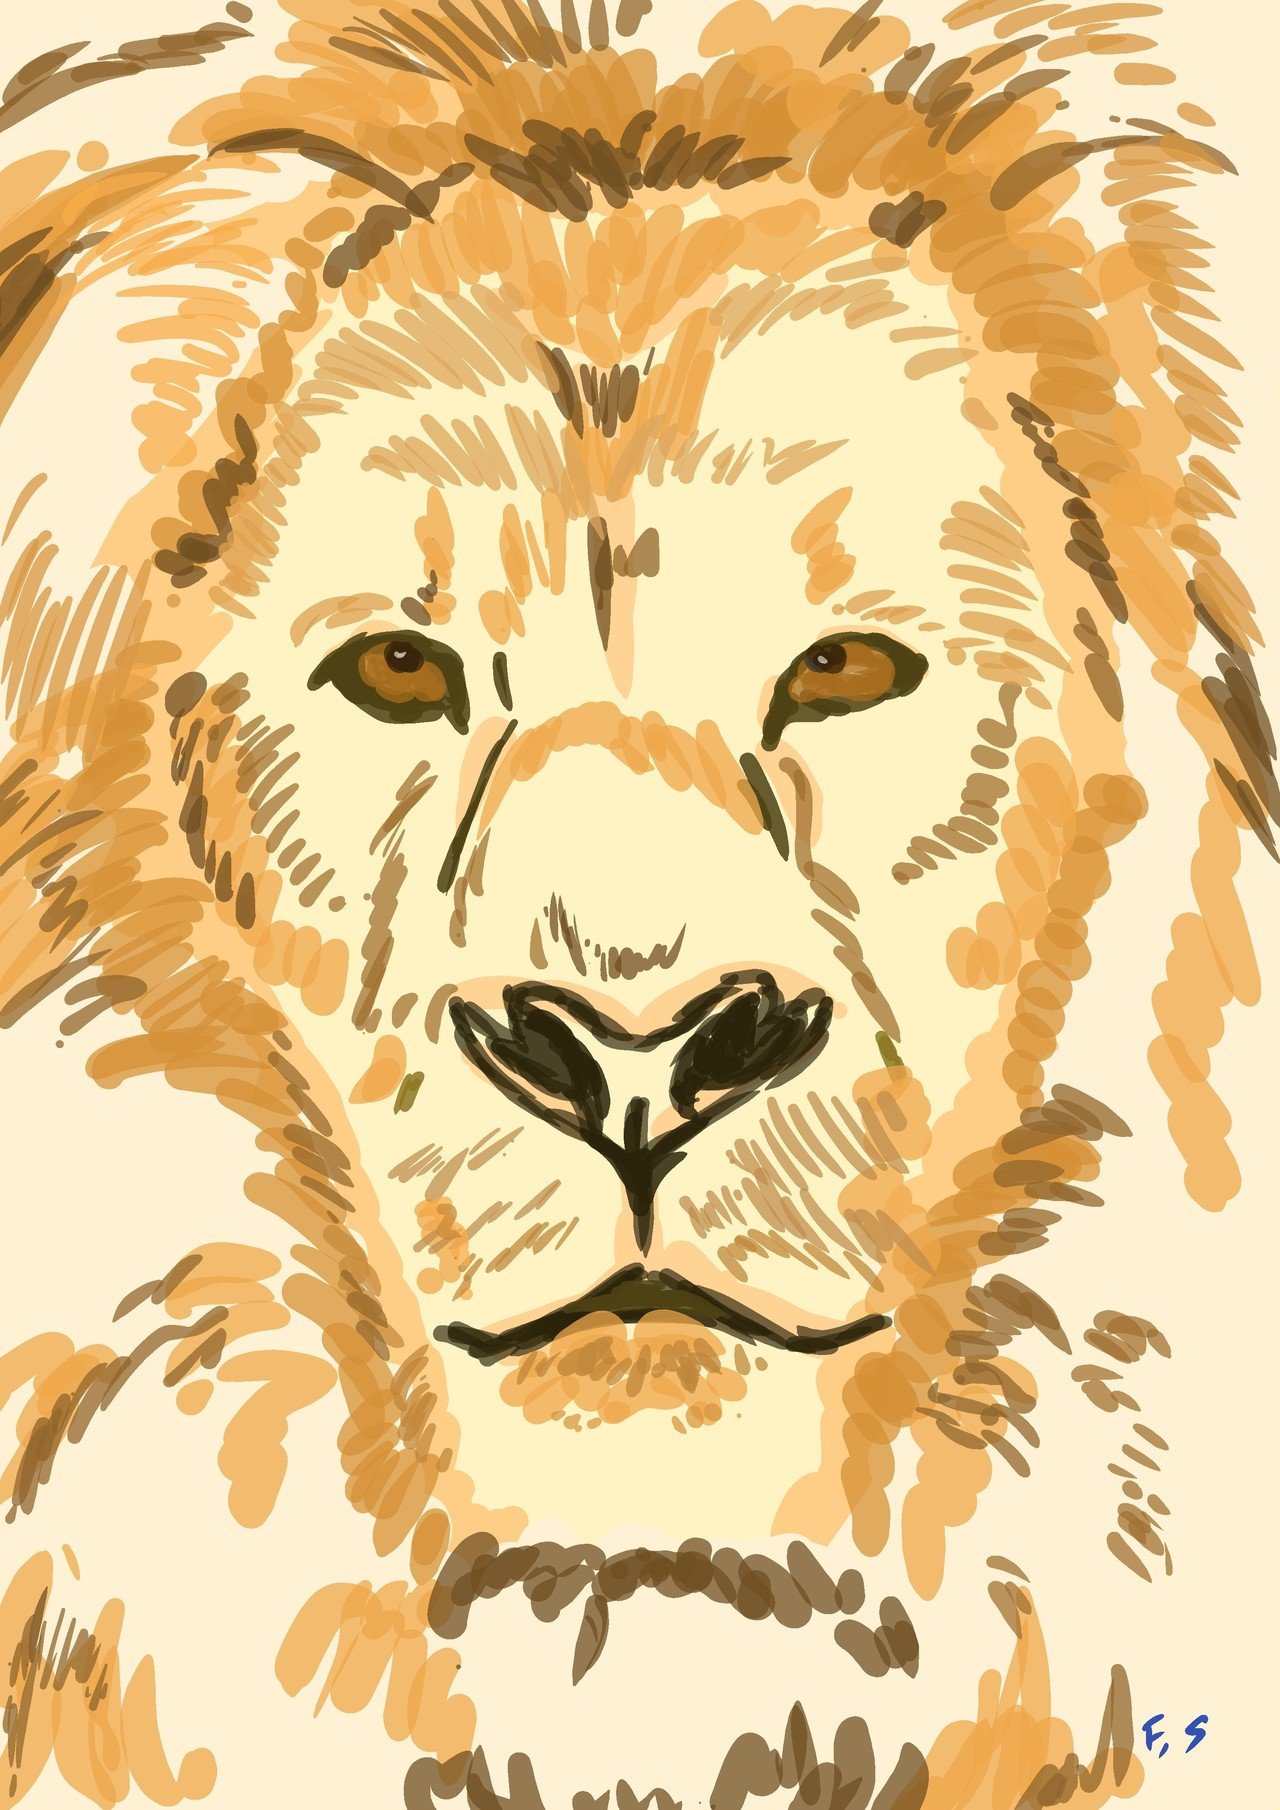 ライオンのイラストをスマホで描く 古川セイ Note